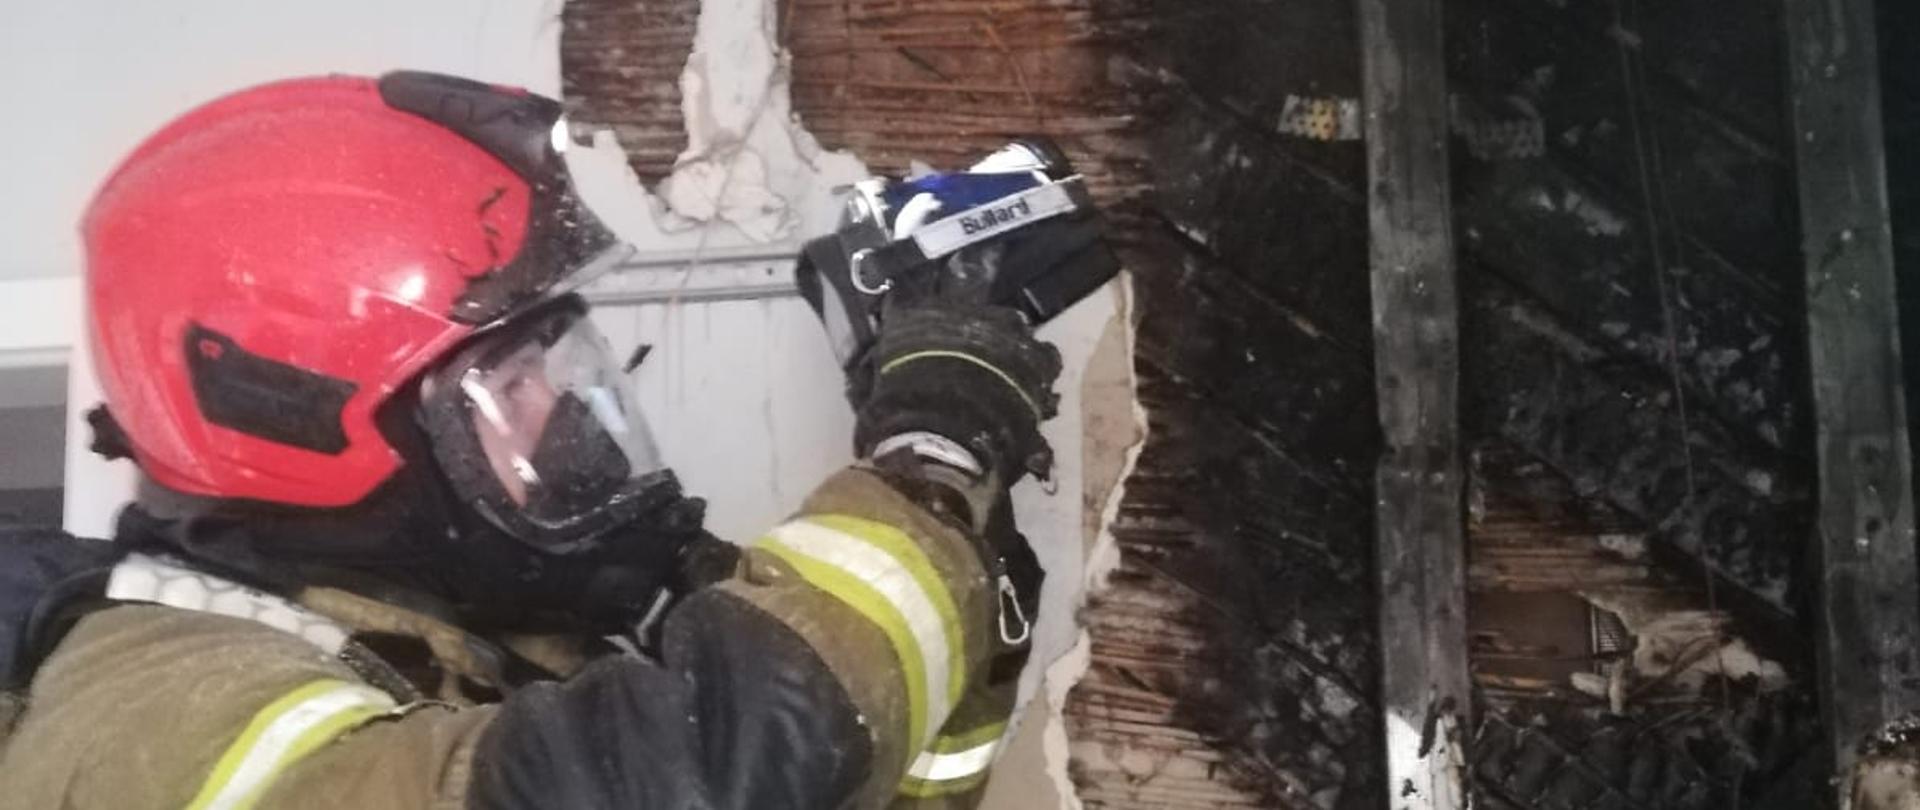 Zdjęcie przedstawia strażaka, który sprawdza kamerą termowizyjną gdzie znajdują się miejsca o podwyższonej temperaturze. Strażak ubrany jest w ubranie bojowe oraz hełm. Strażak ma na sobie środki ochrony osobistej apart oddechowy oraz maskę. 